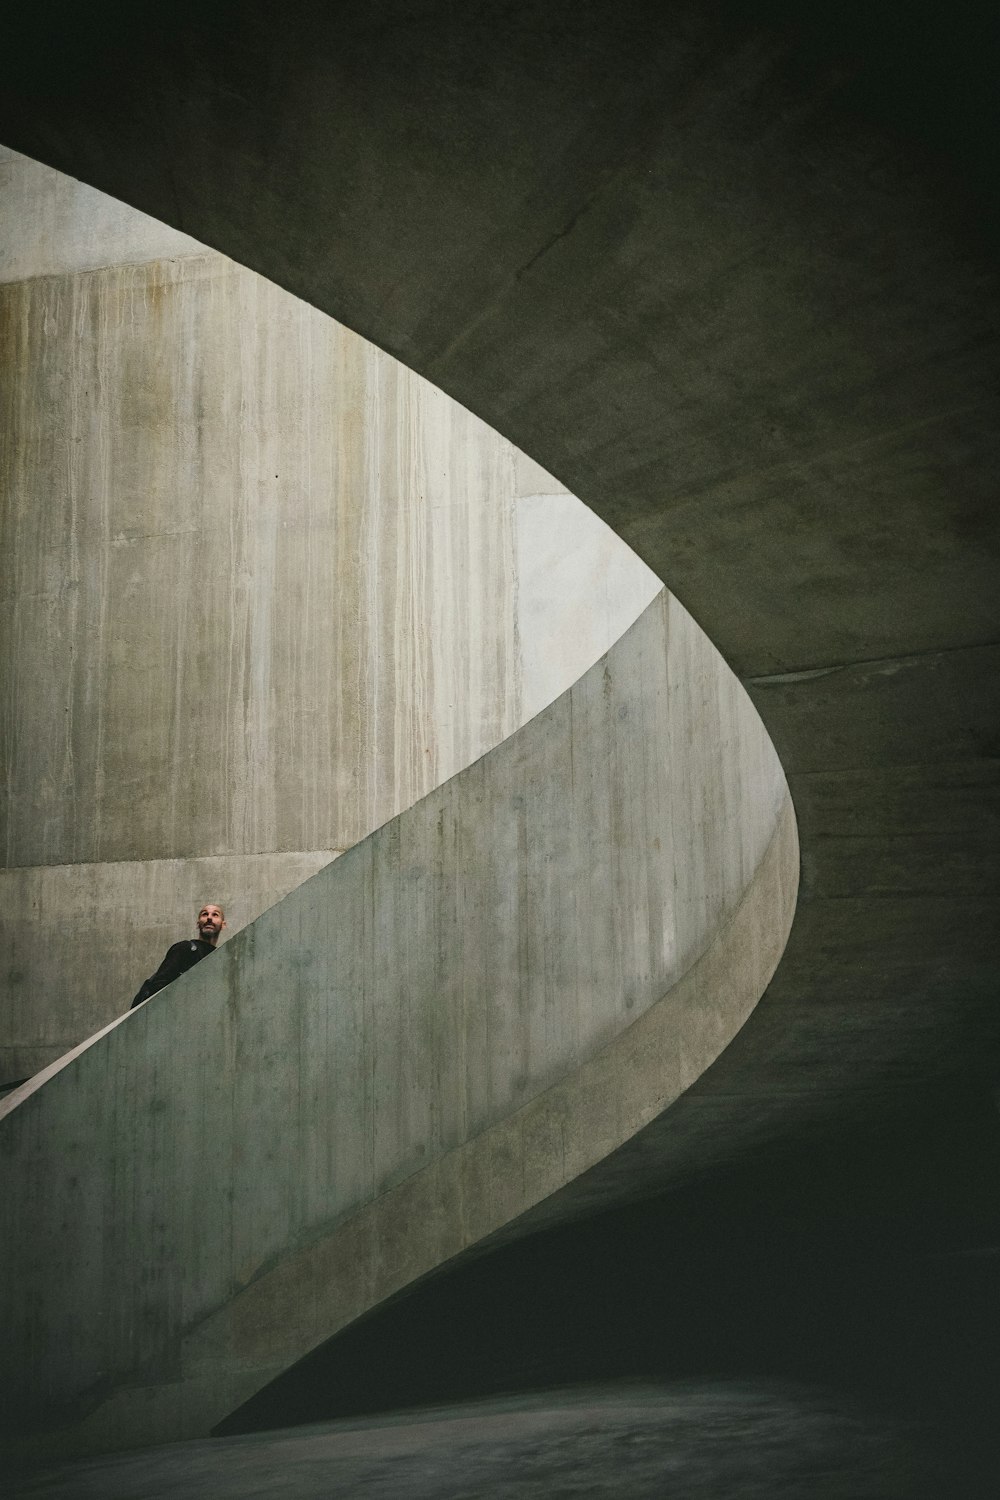 Fotografía de hombre subiendo una escalera de caracol